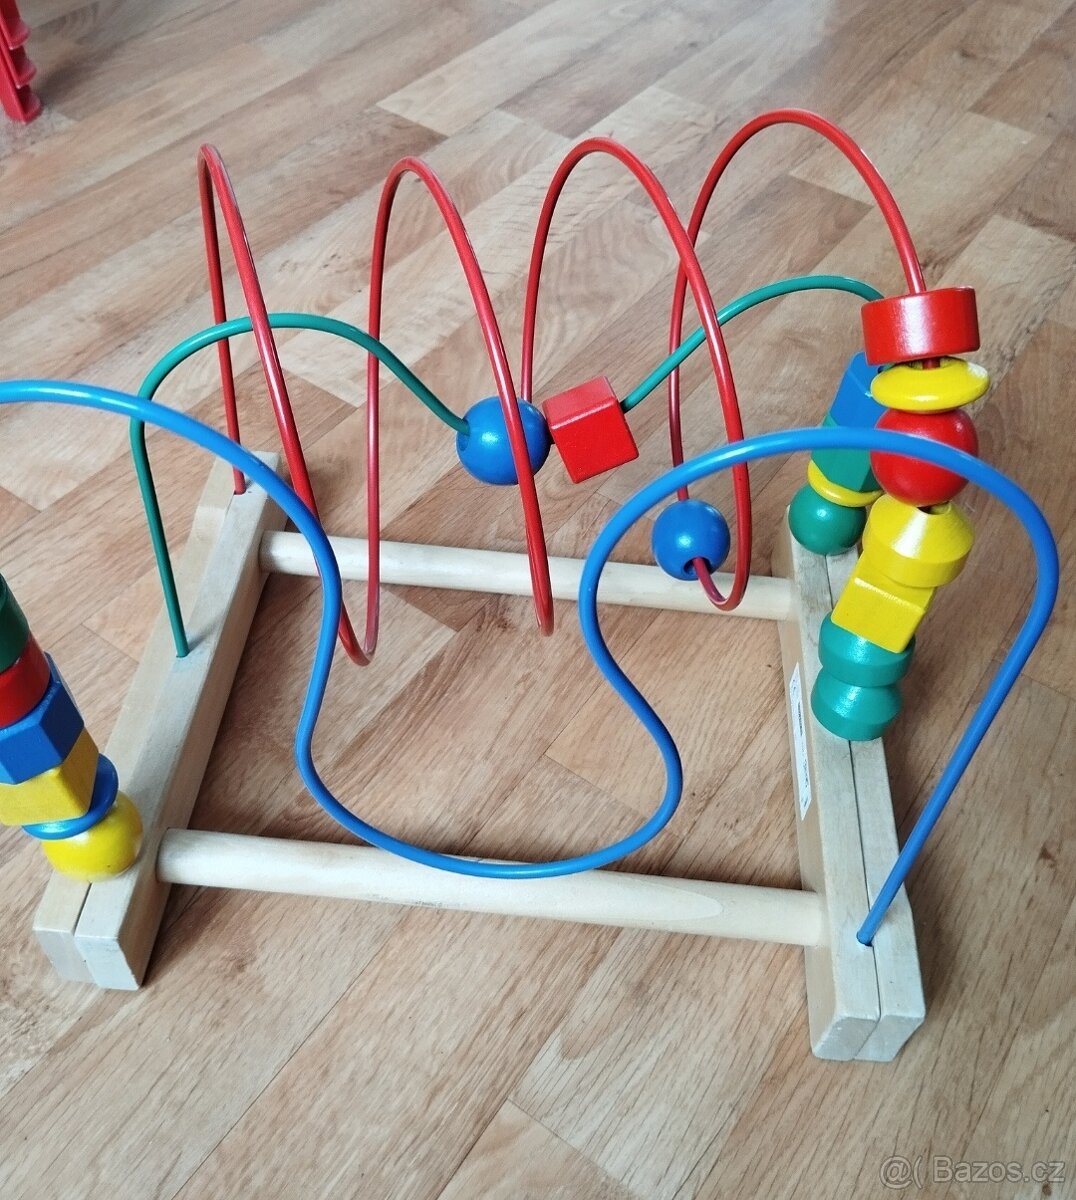 Ikea labyrint - hracka pro deti na rozvoj motoricky